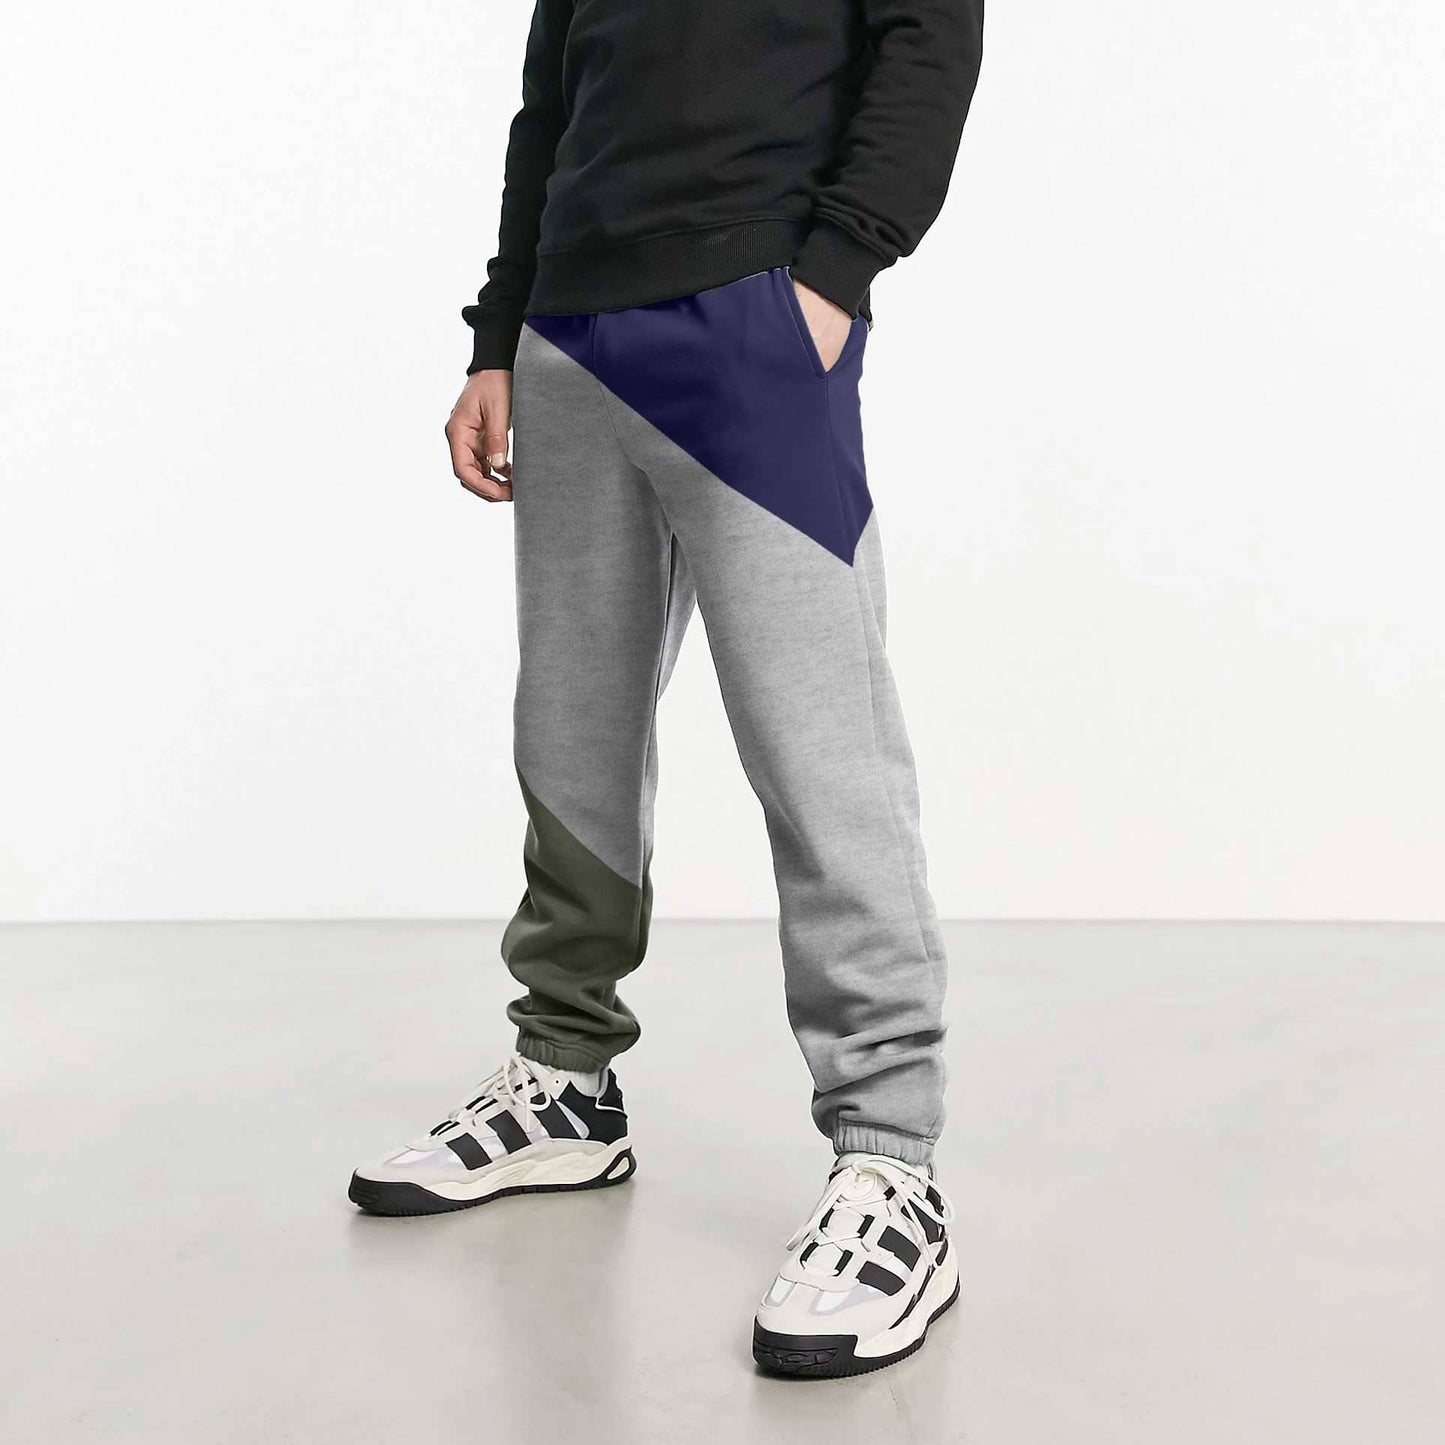 MAX 21 Men's Contrast Design Betim Sweat Pants Men's Trousers SZK Navy & Grey S 